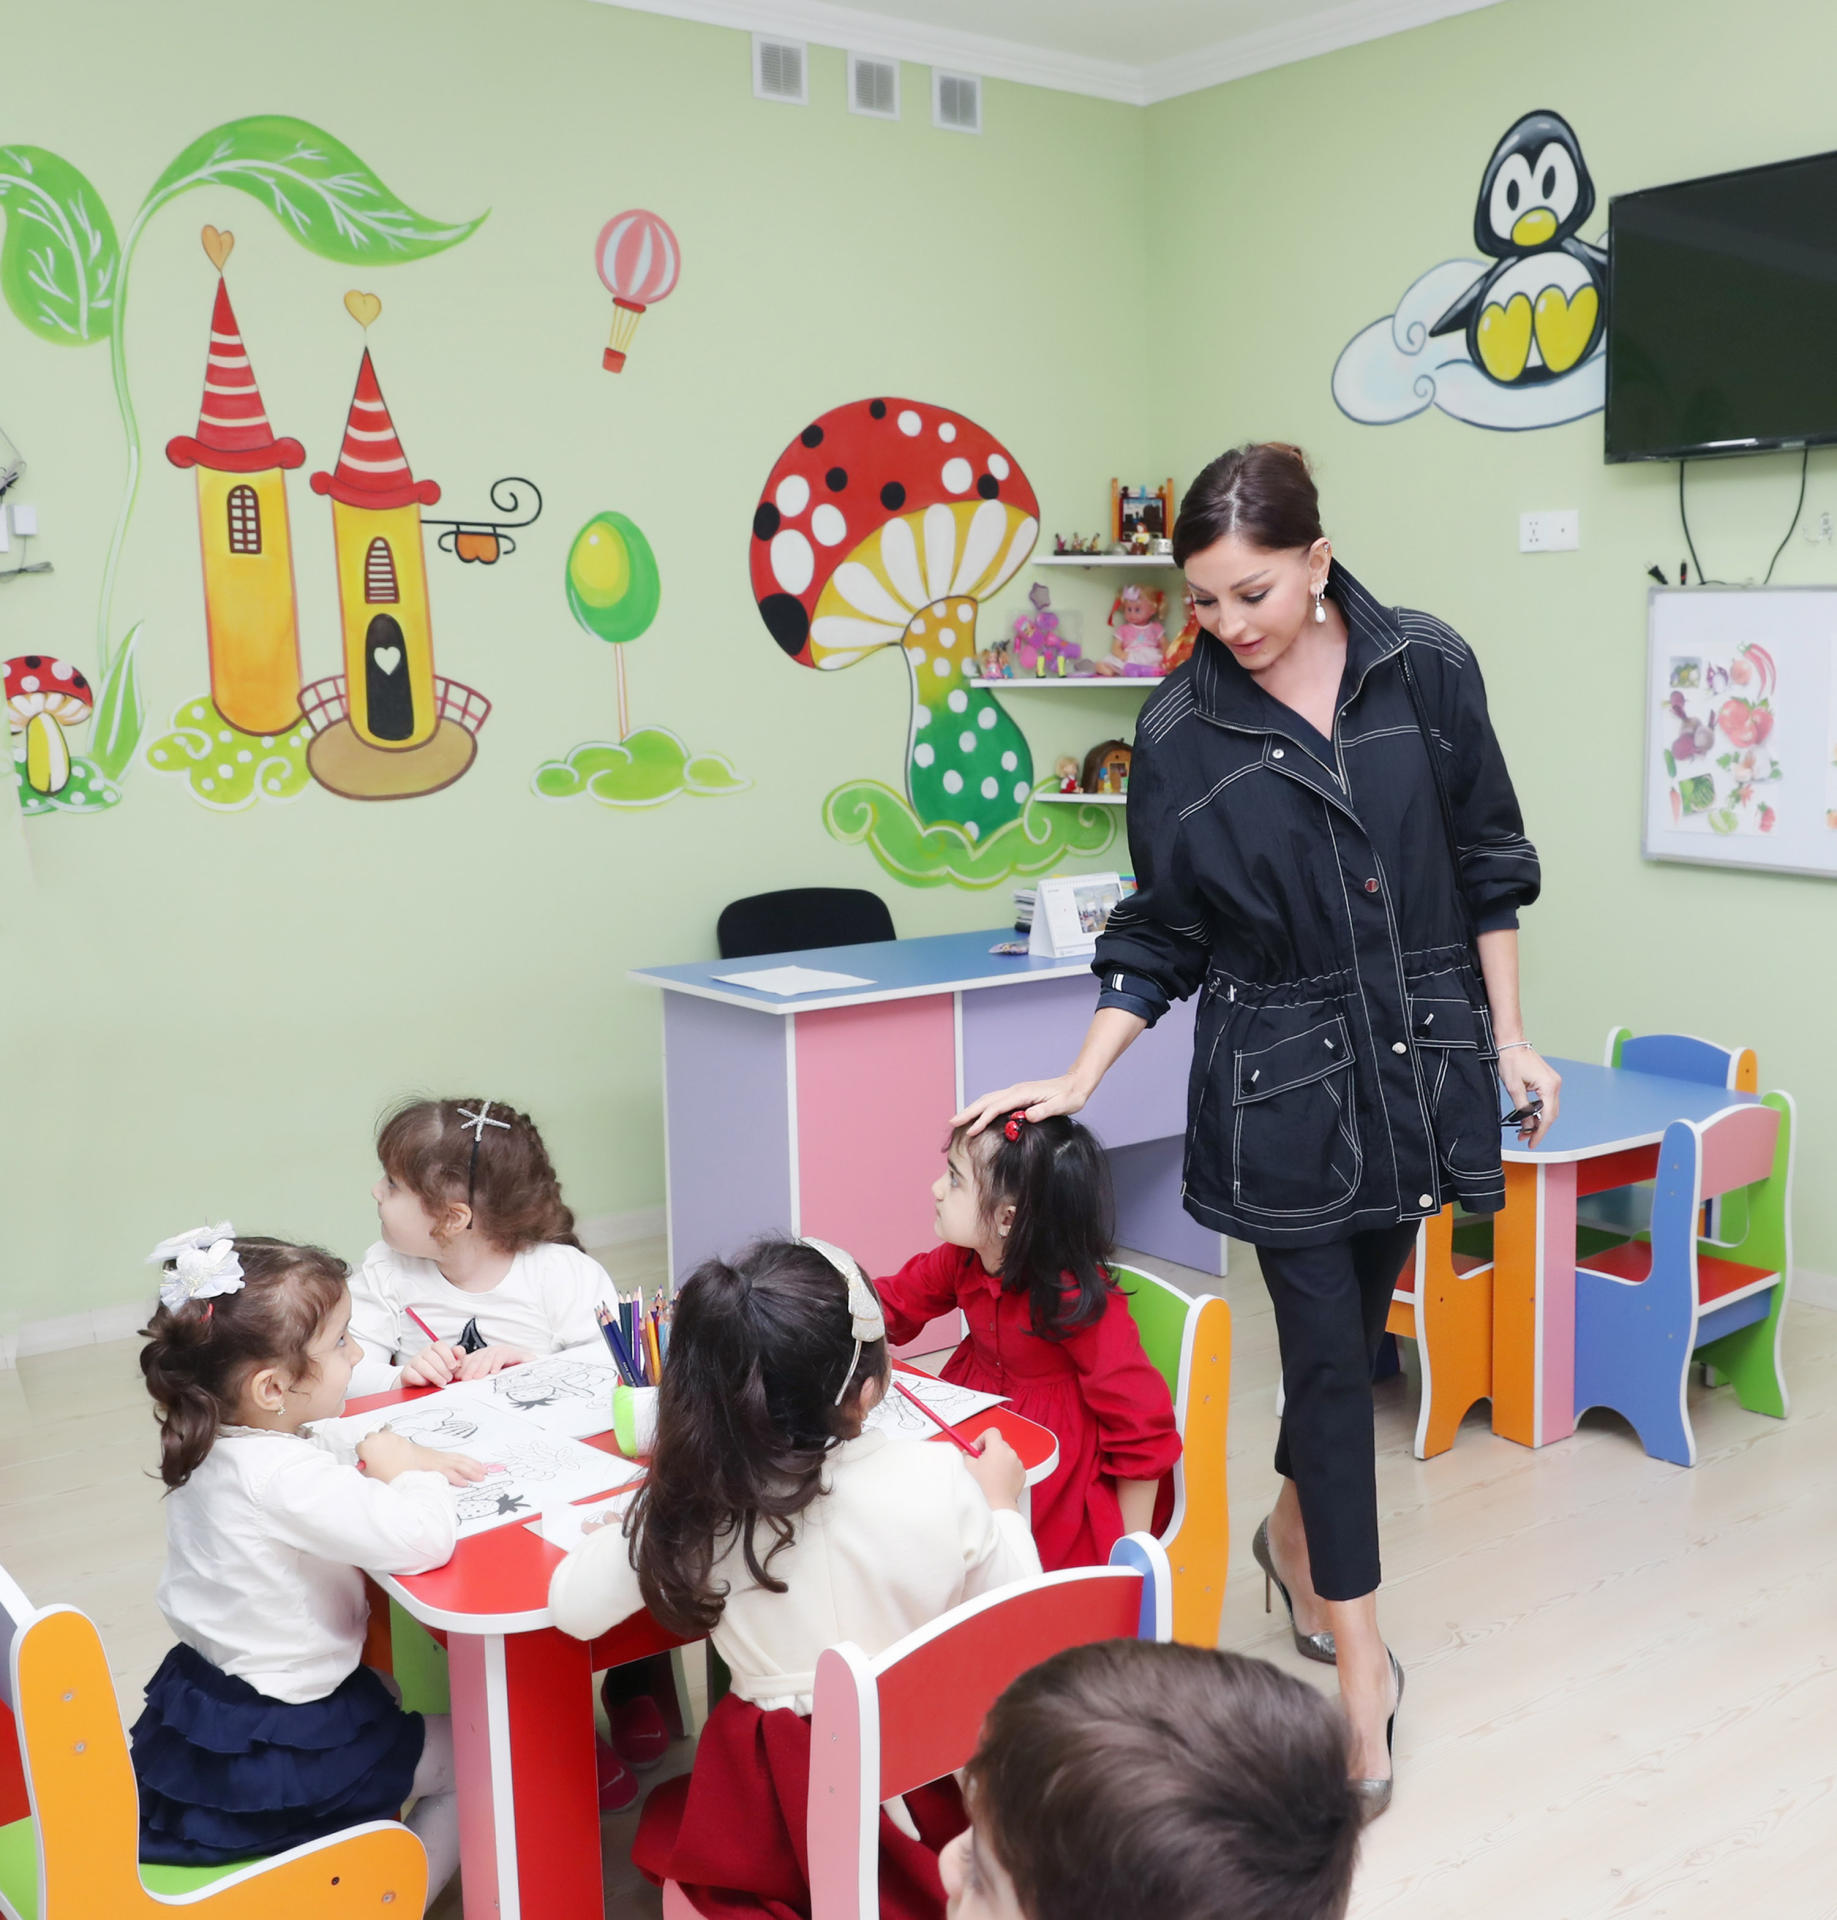 Счастливое детство азербайджанских детей - репортаж из детского сада номер 64 в Баку (ВИДЕО, ФОТО)